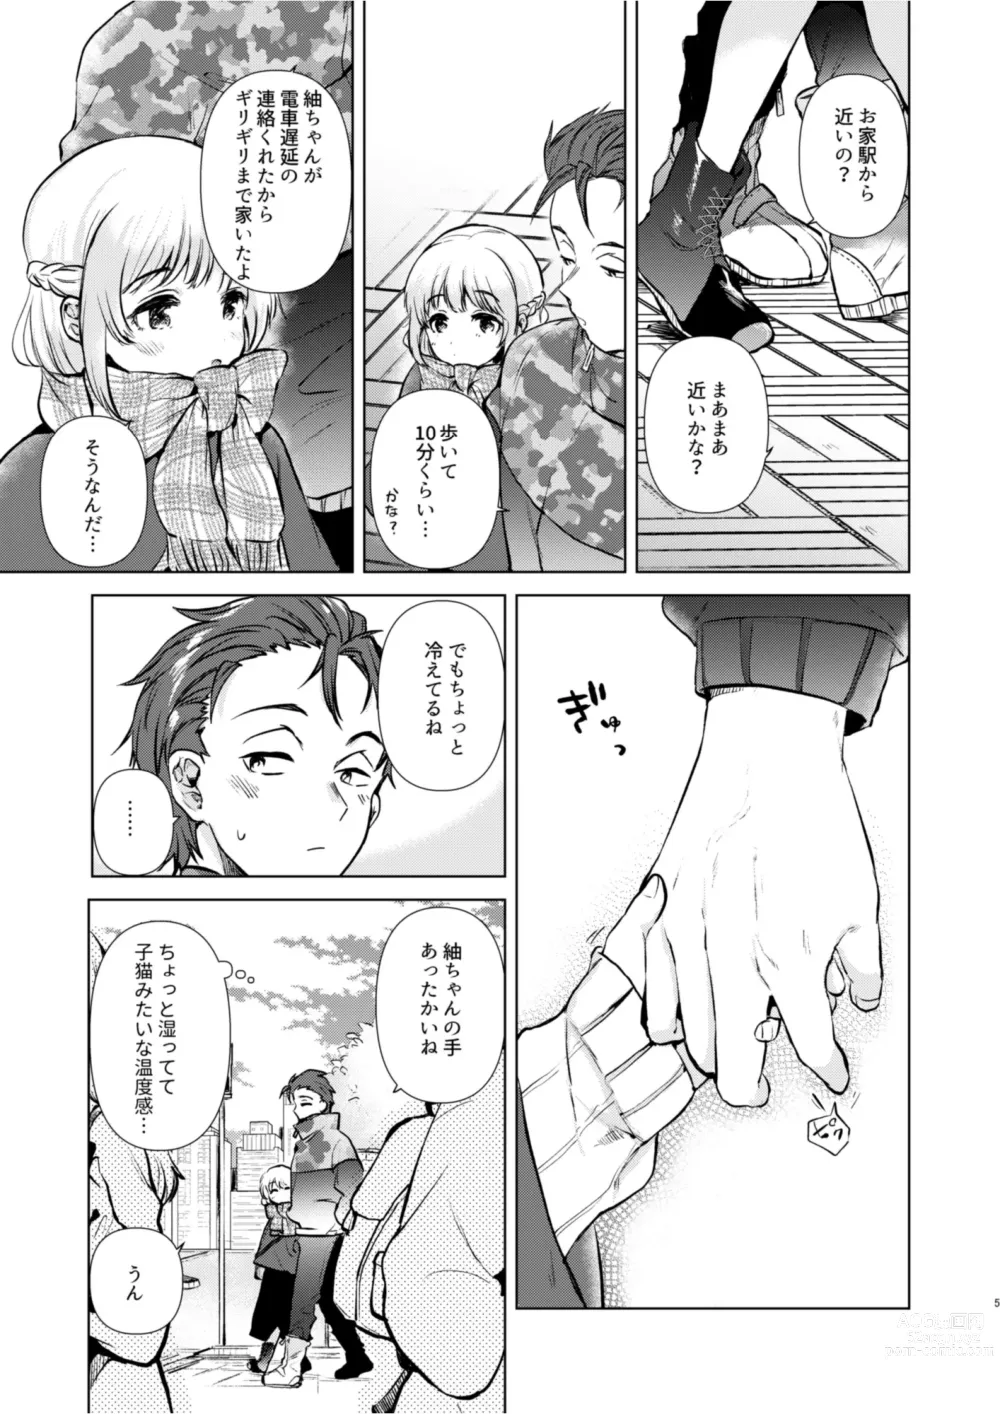 Page 4 of doujinshi Tsumugi-chan no Seichouki